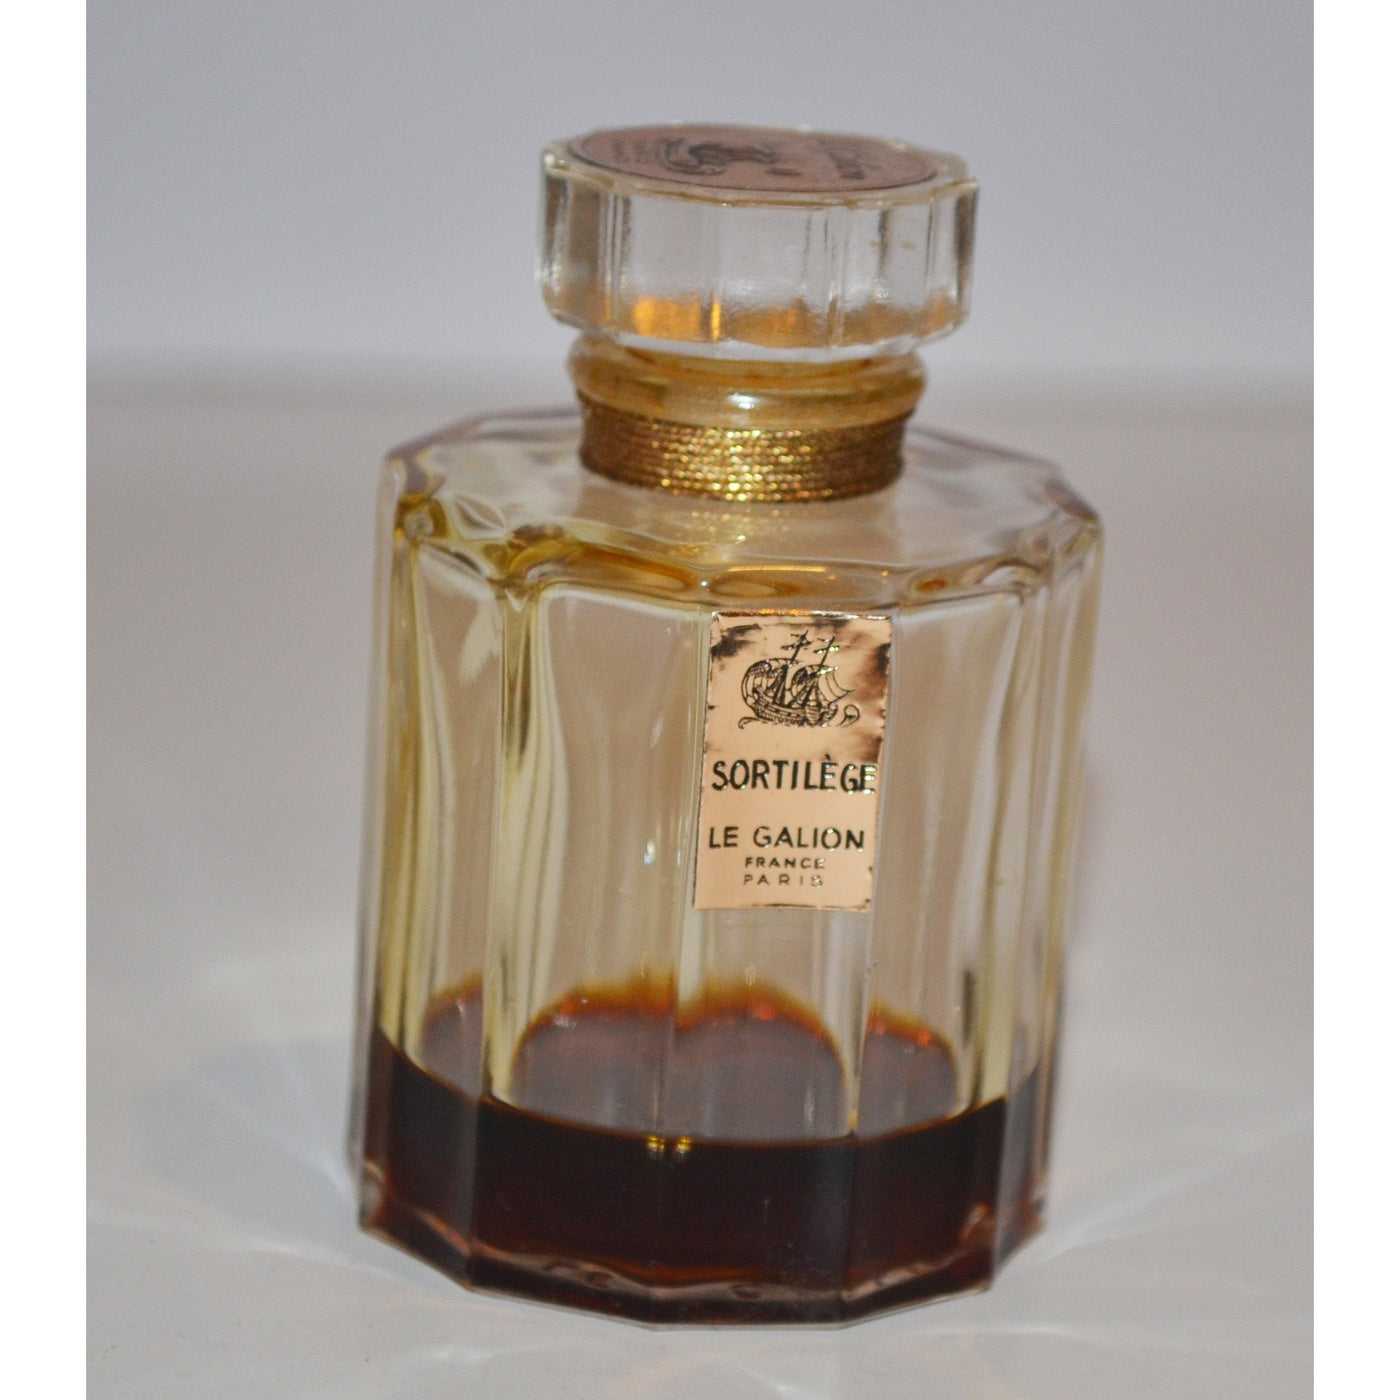 Vintage Le Galion Sortilege Parfum